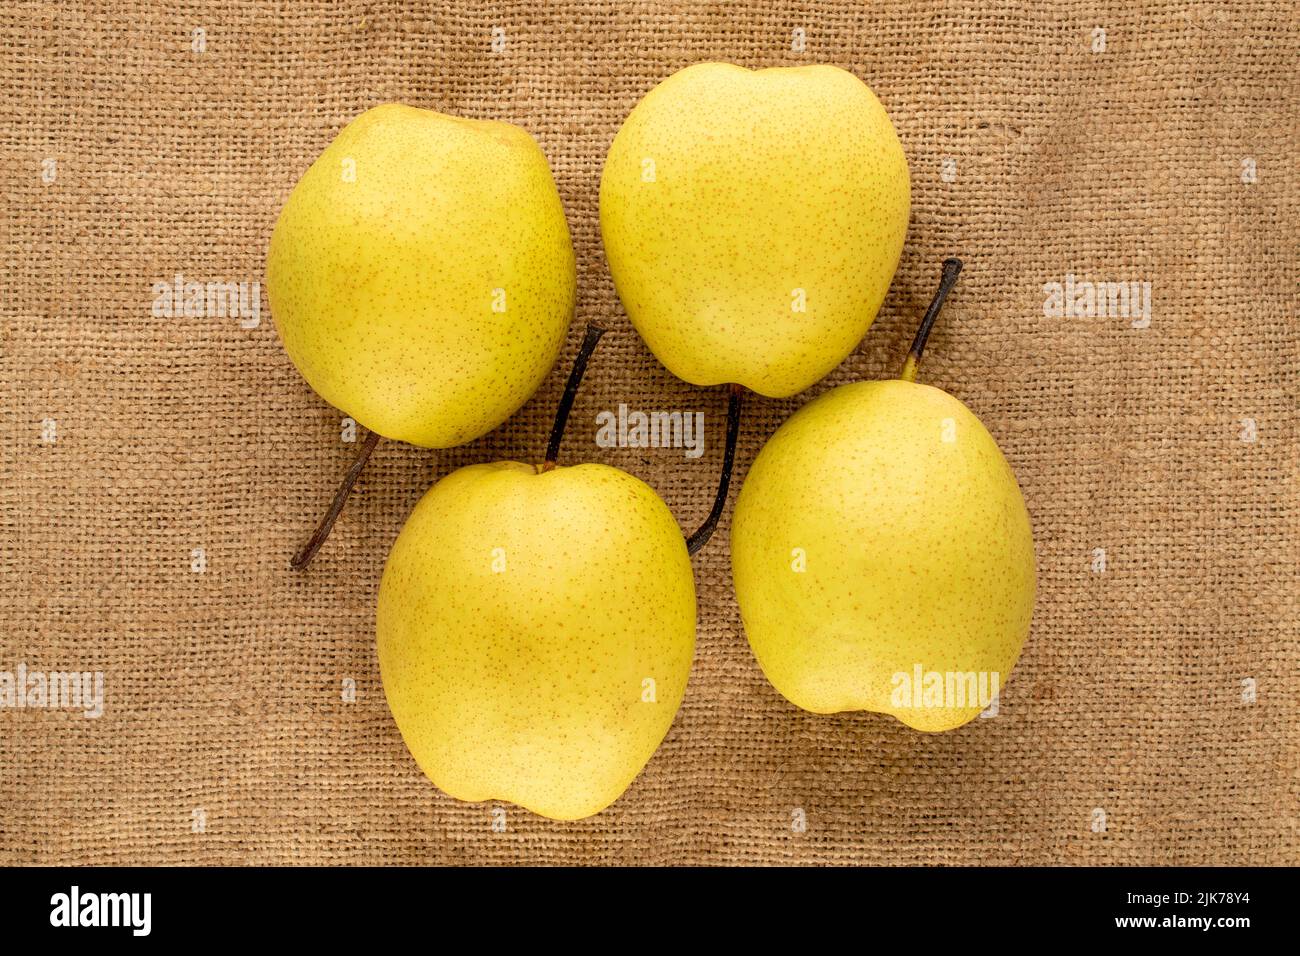 Quatre poires jaunes douces et lumineuses en toile de jute, vue rapprochée, vue du dessus. Banque D'Images